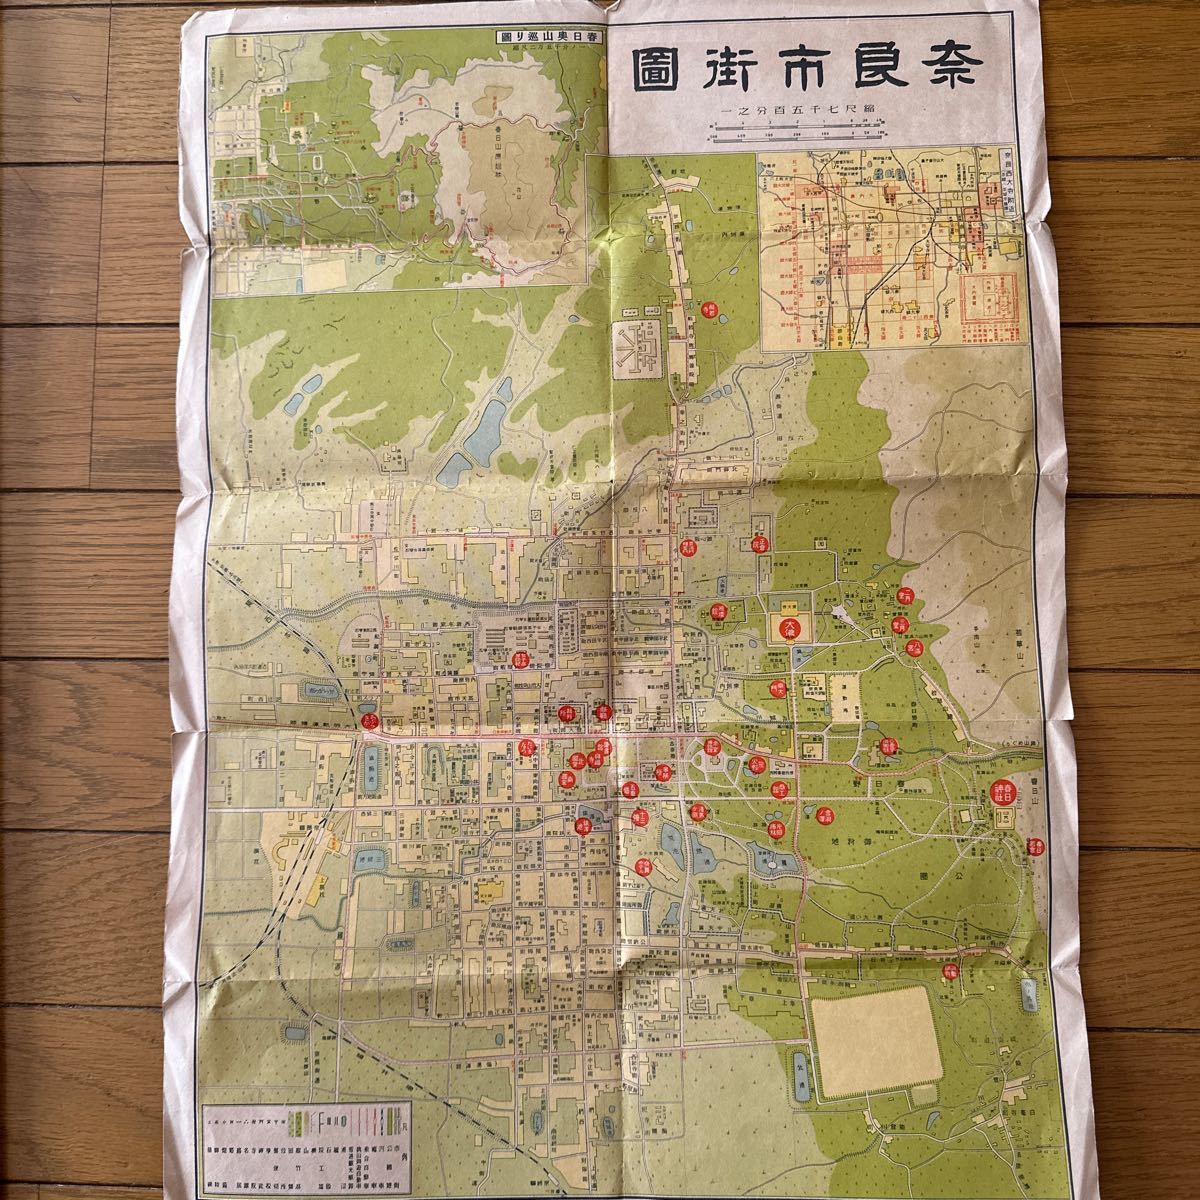 192　奈良市街図　大和巡歴地図　昭和15年　古地図　7500分の1　奈良県教育会編集_画像4